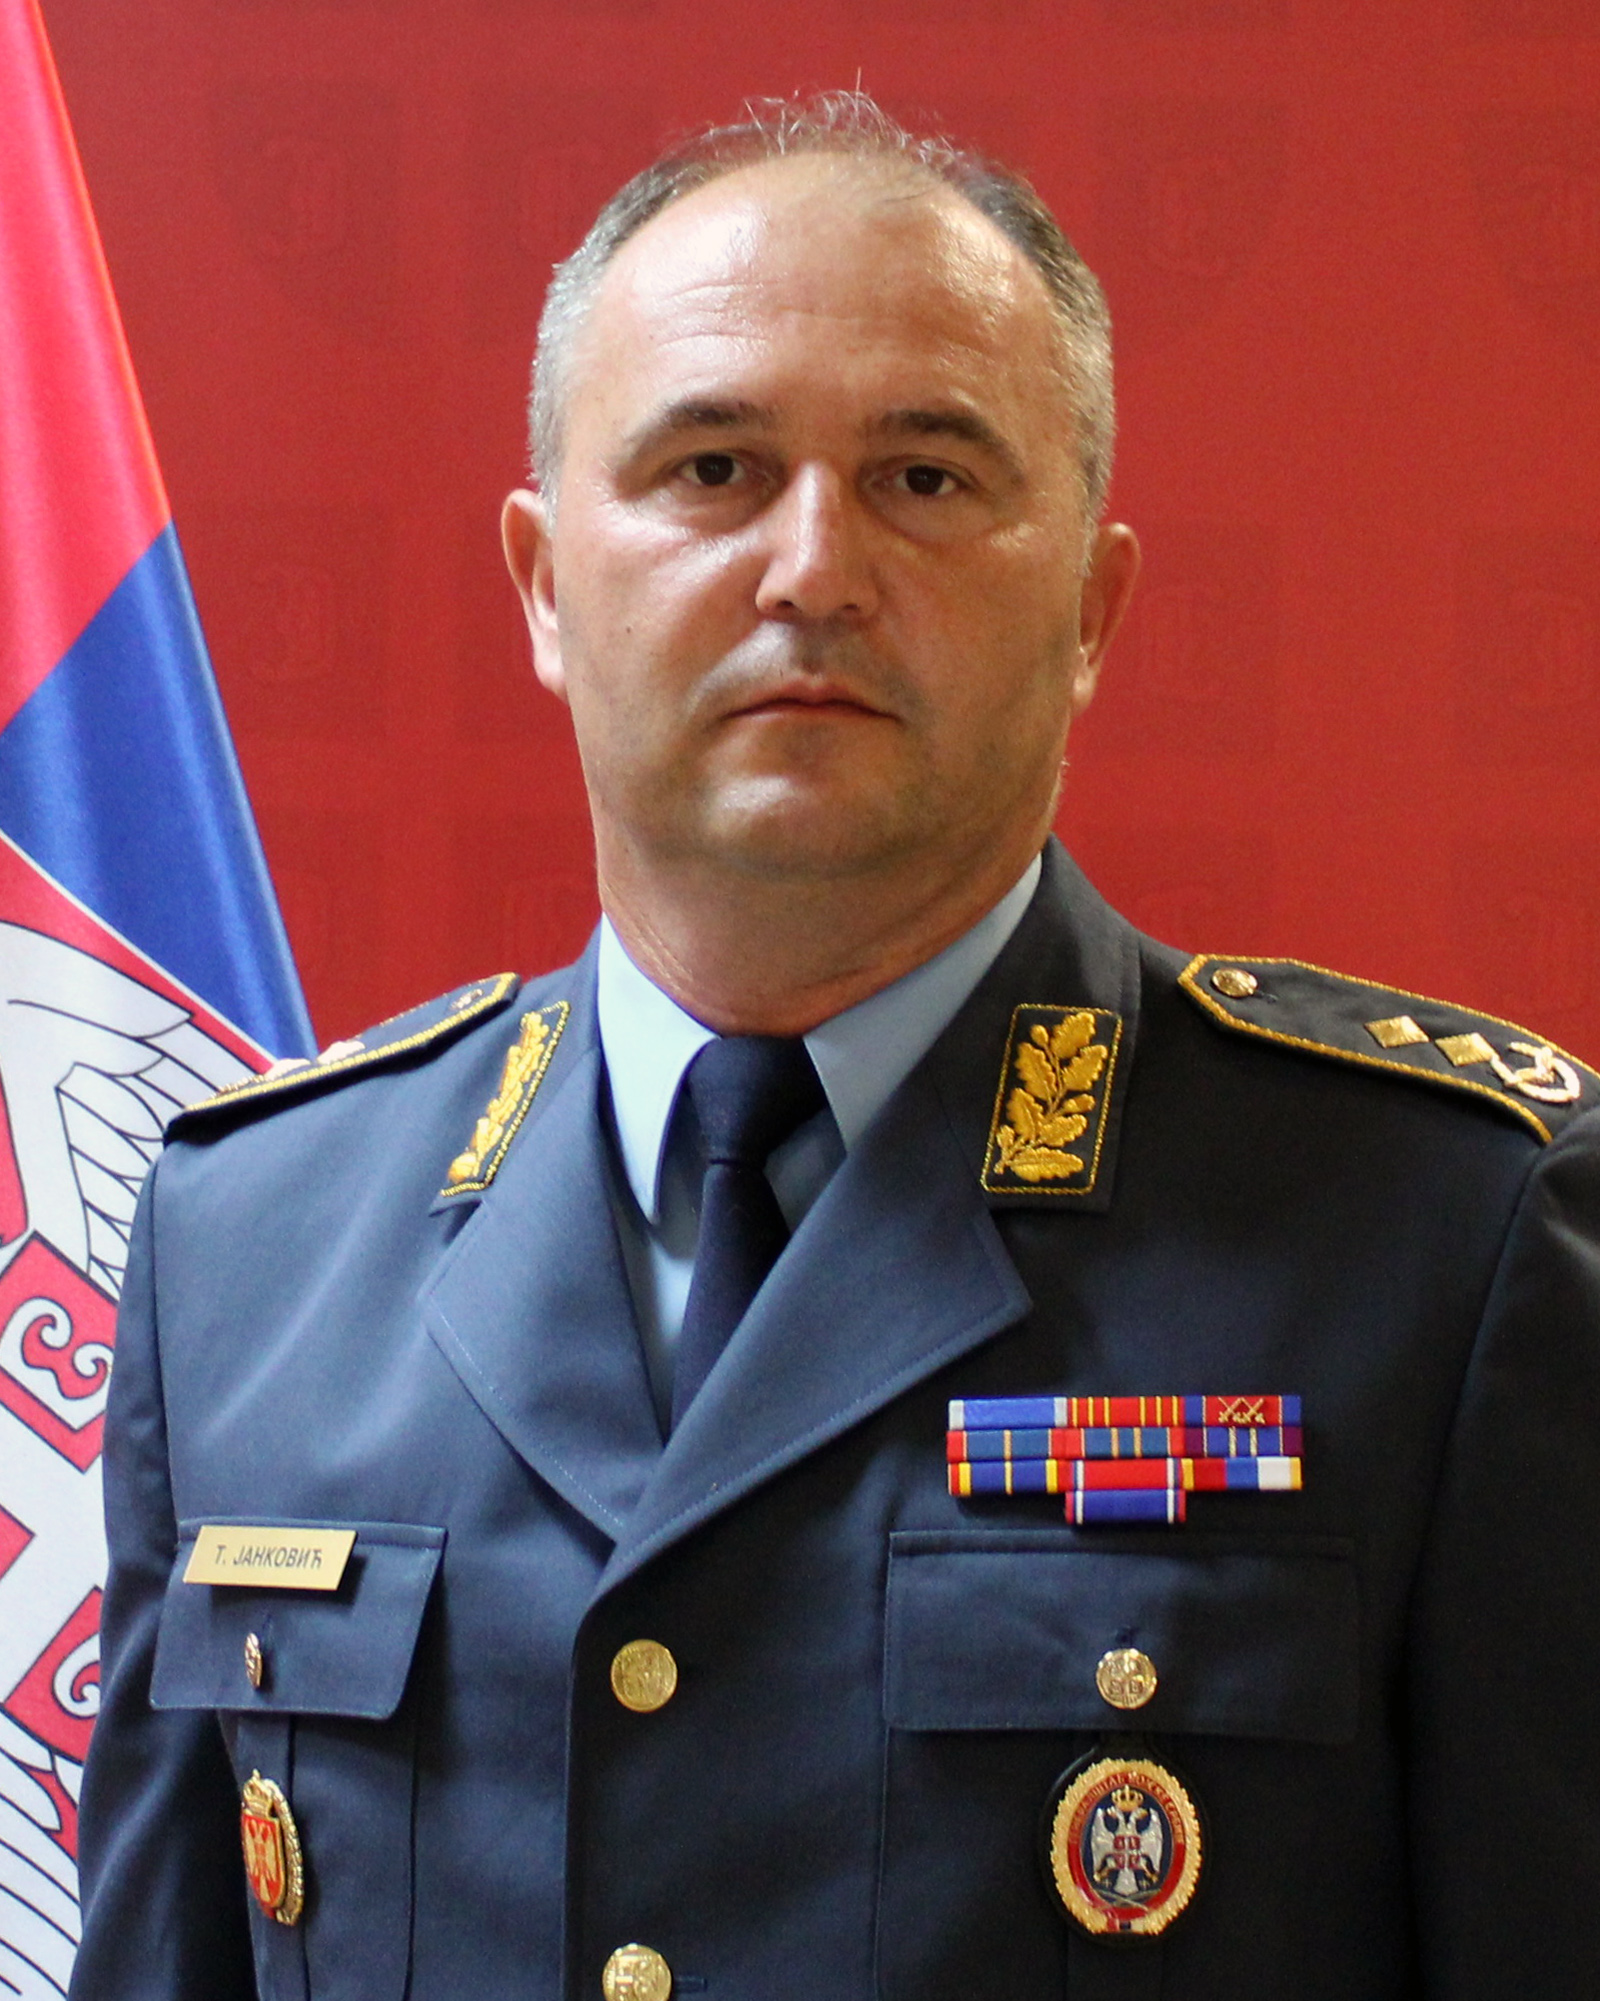 Major General Tiosav Janković